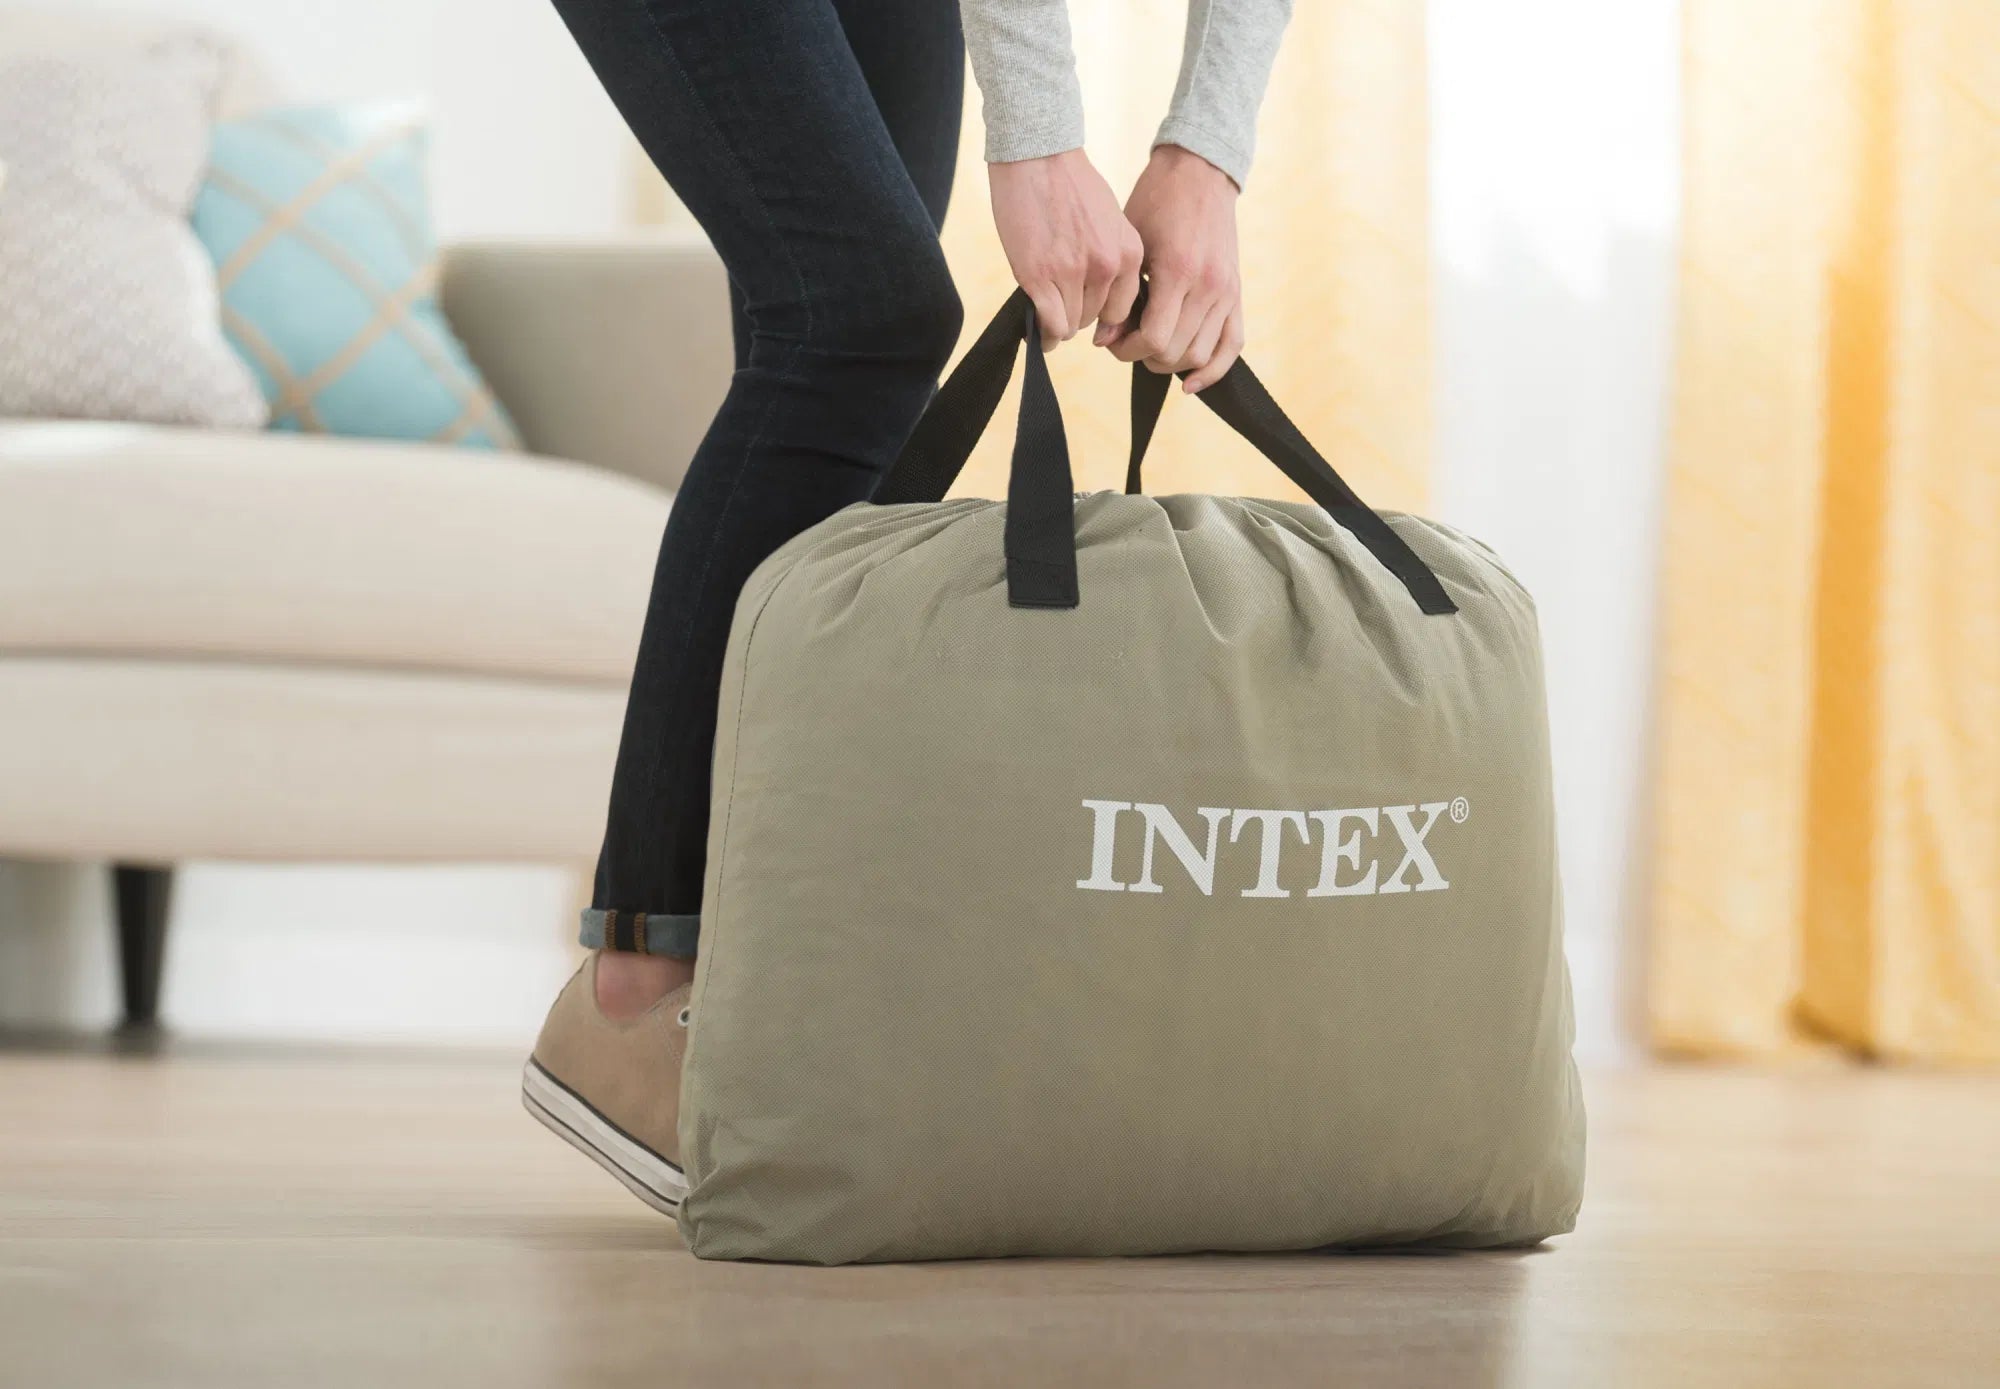 Intex 24" Dream Lux Pillow Top Dura-Beam Airbed Mattress with Internal Pump - Queen